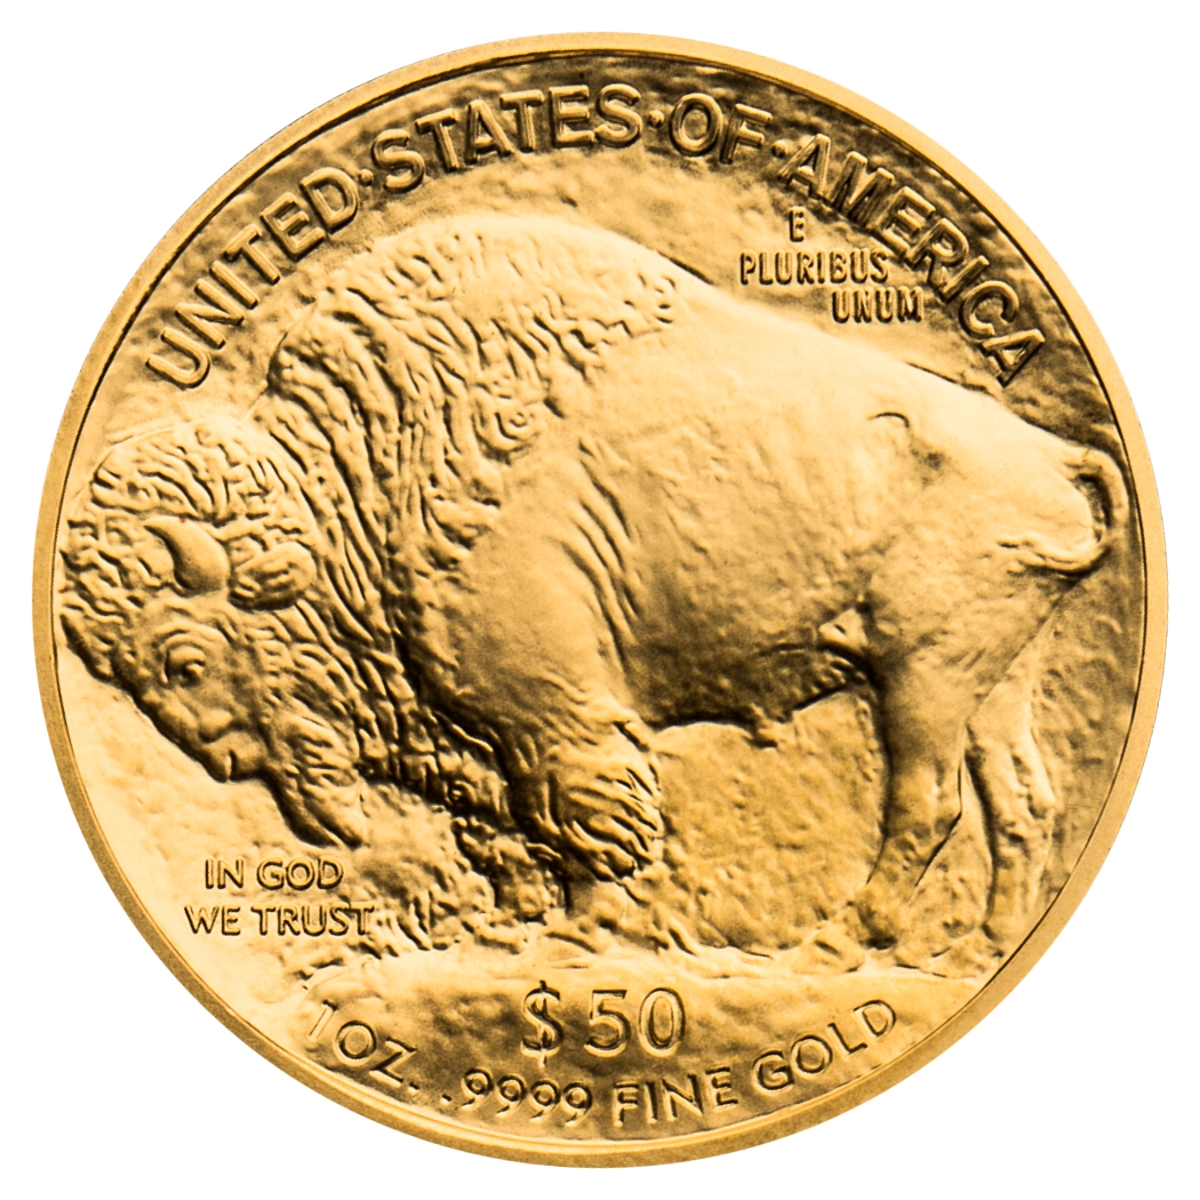 1 oz American Gold Buffalo Coin